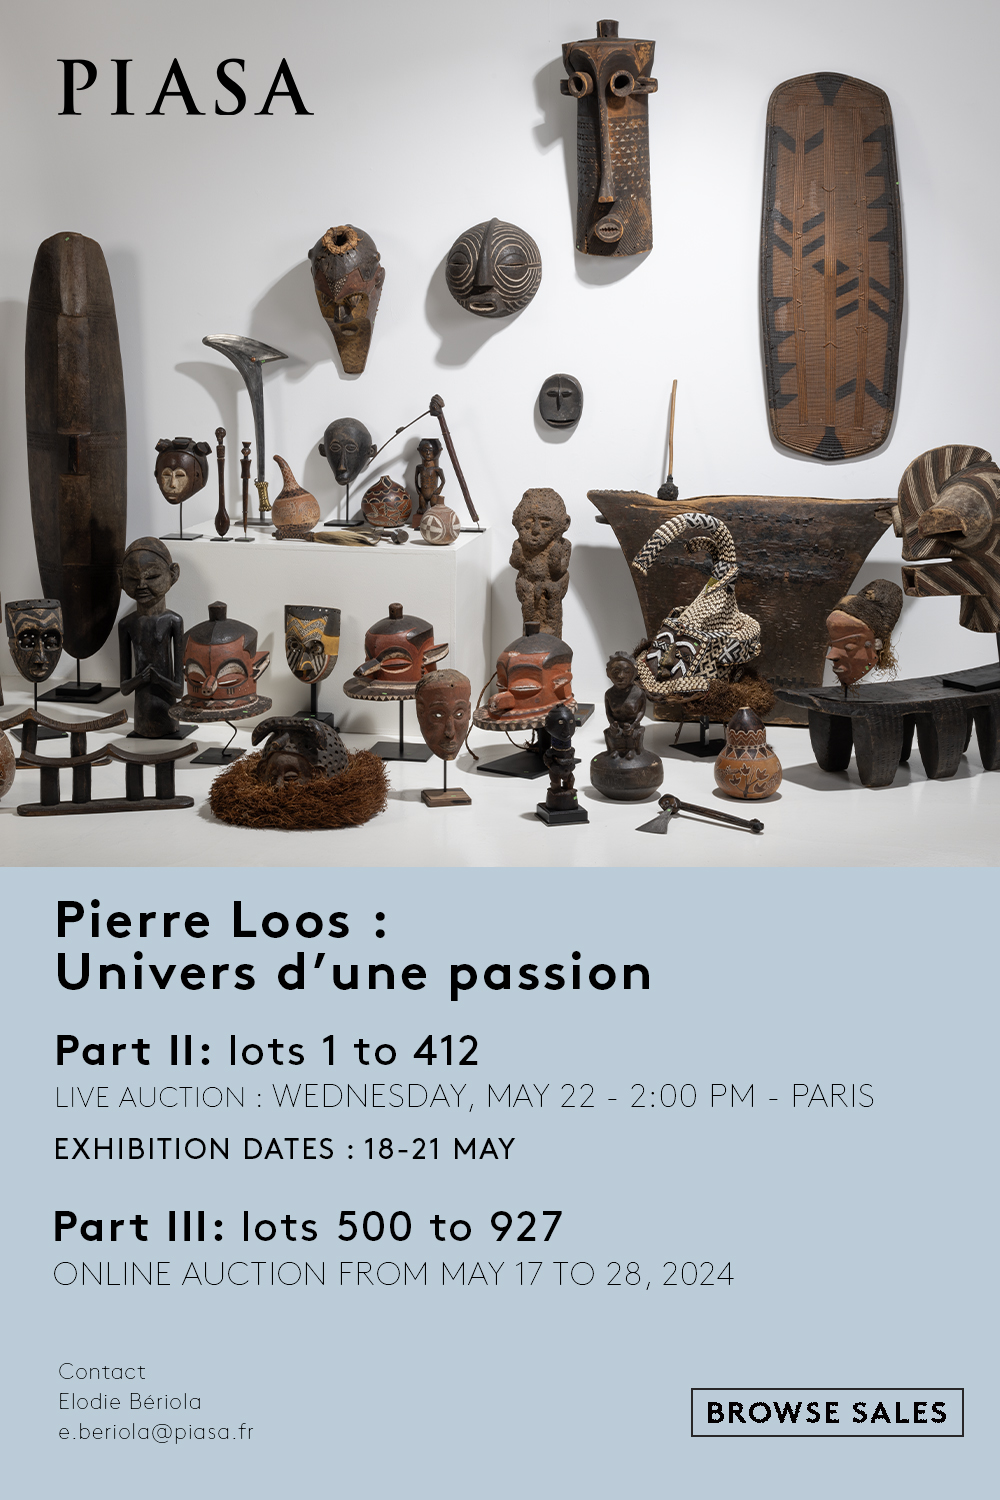 PIASA | Pierre Loos : Univers d’une passion PARIS